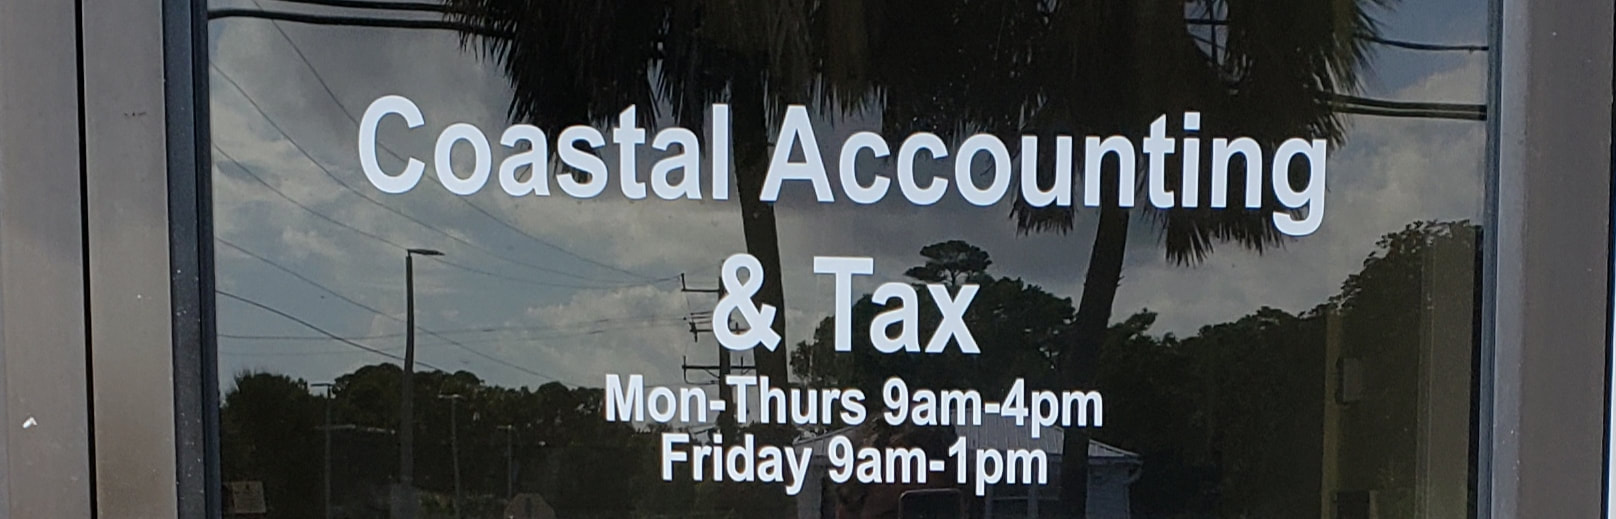 Coastal Accounting and Tax, LLC 1029 N Lake Park Blvd, Carolina Beach North Carolina 28428